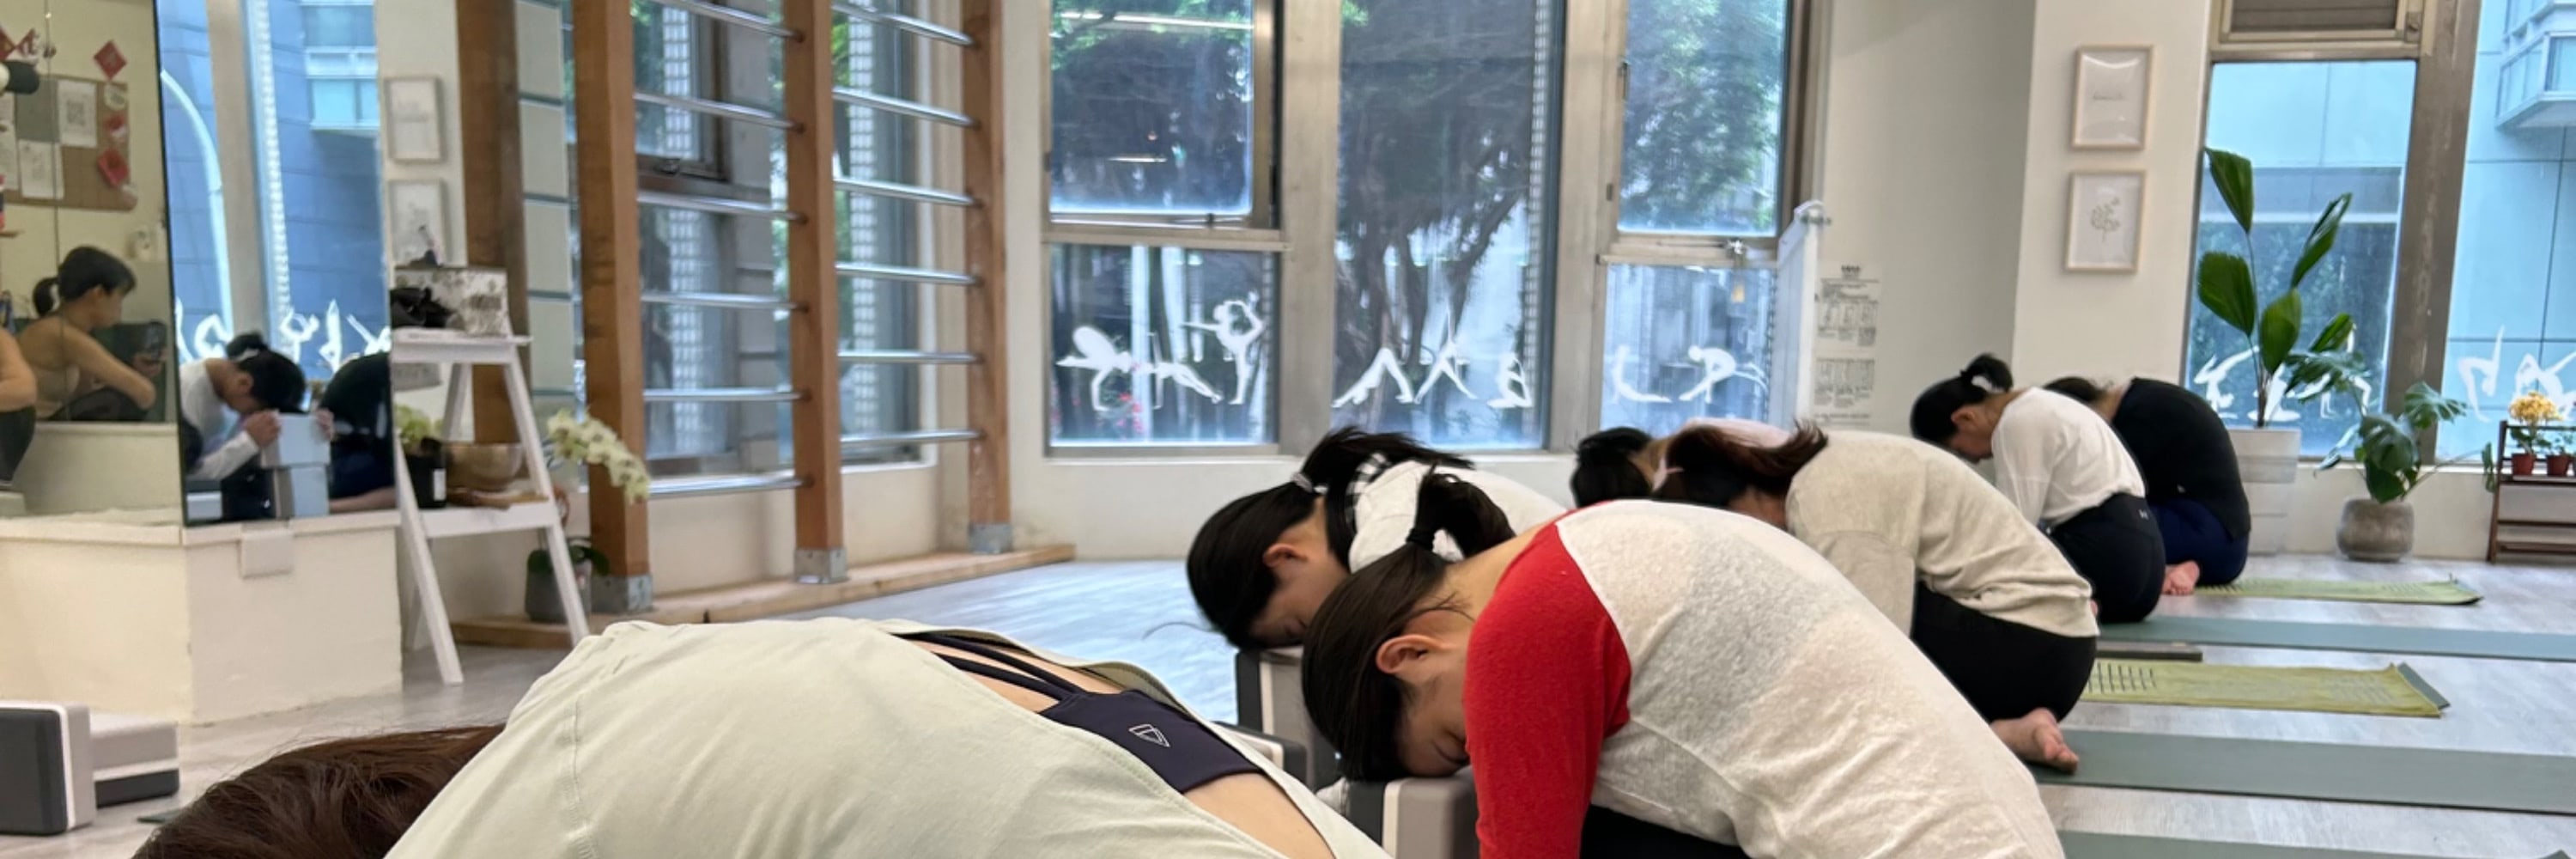 台北中山: 瑜珈課程